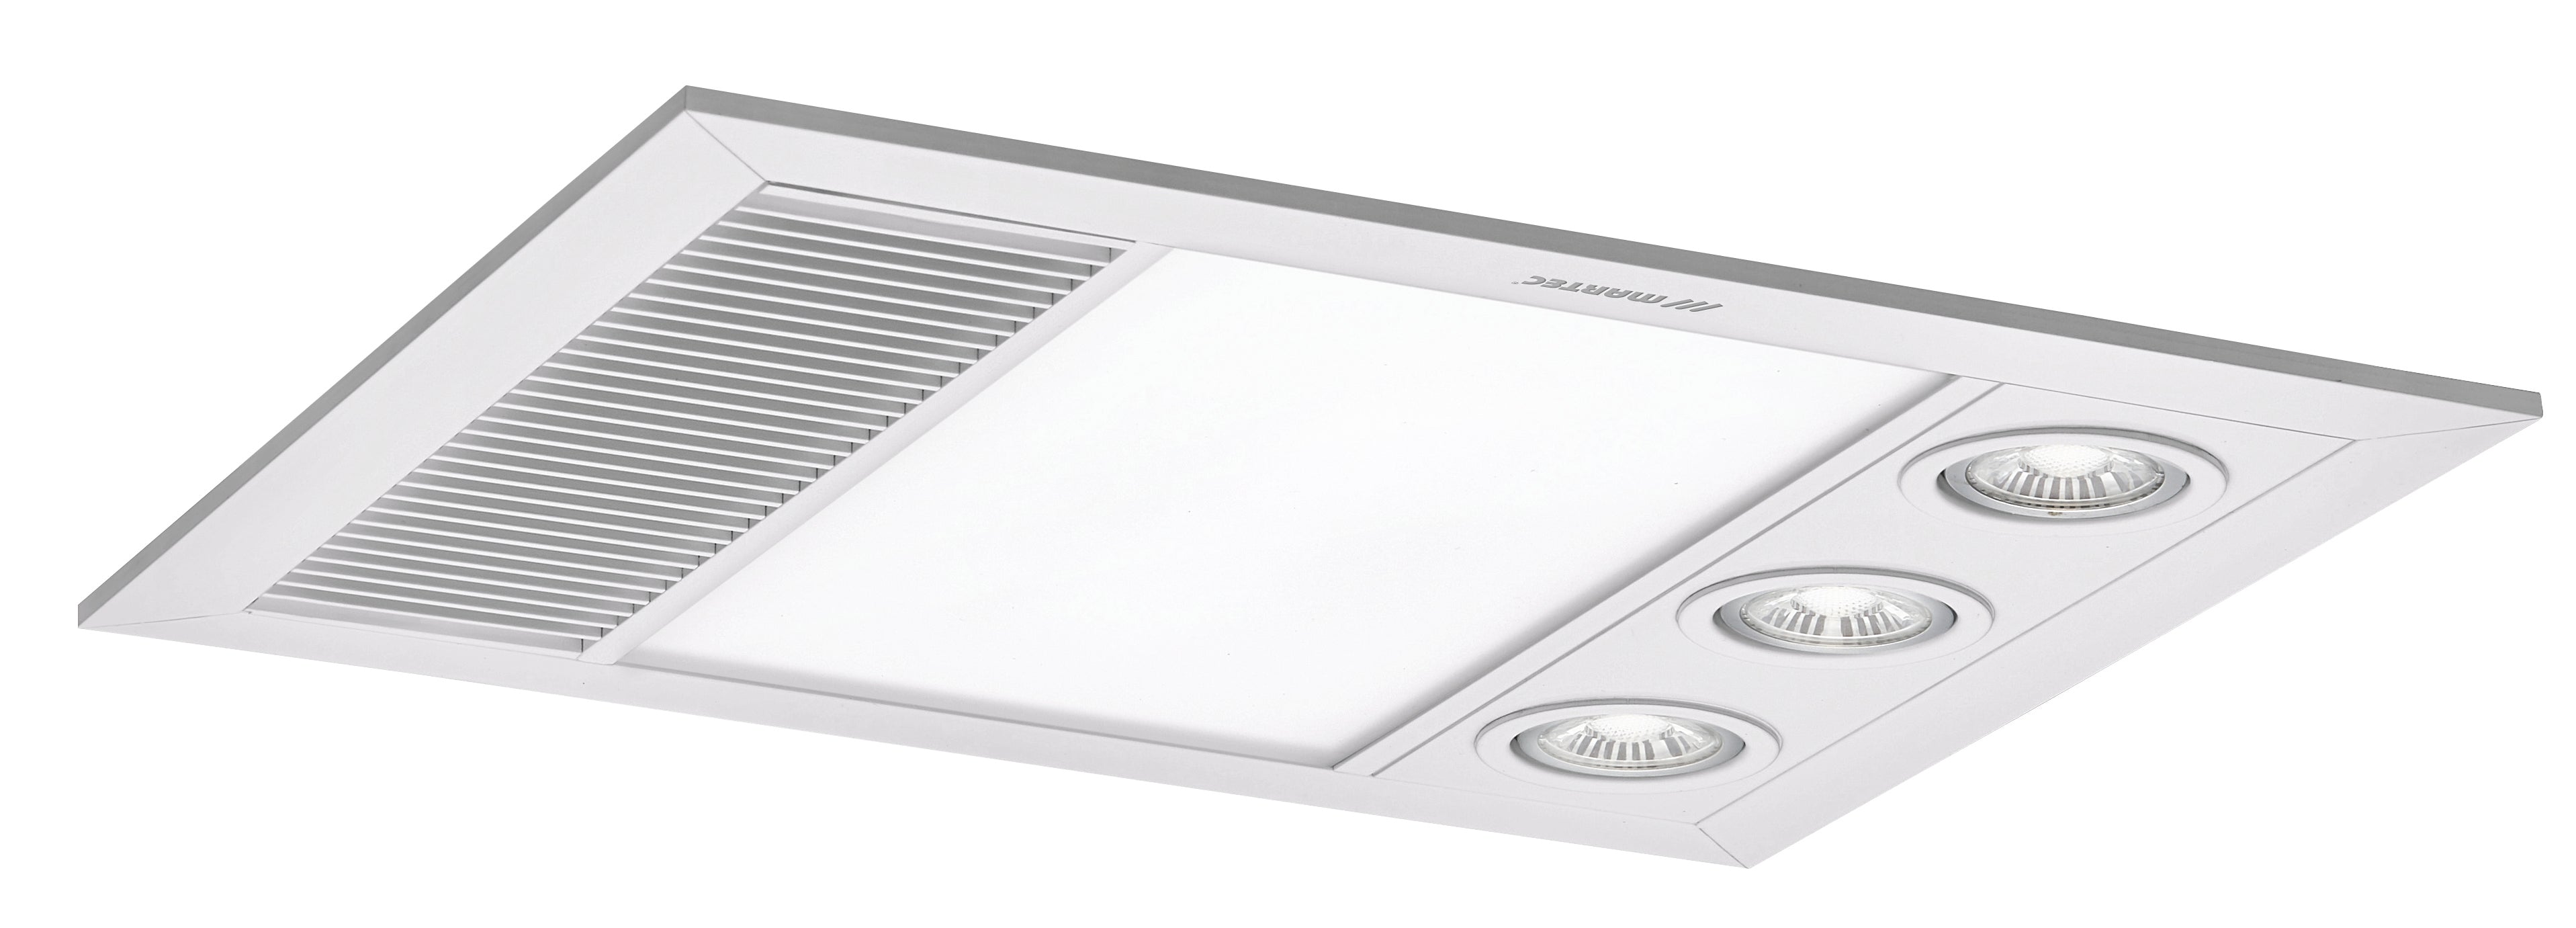 Martec 480m³/h Linear MINI 3 in 1 Bathroom Heater / Exhaust Fan & LED Light in White - MBHM1000